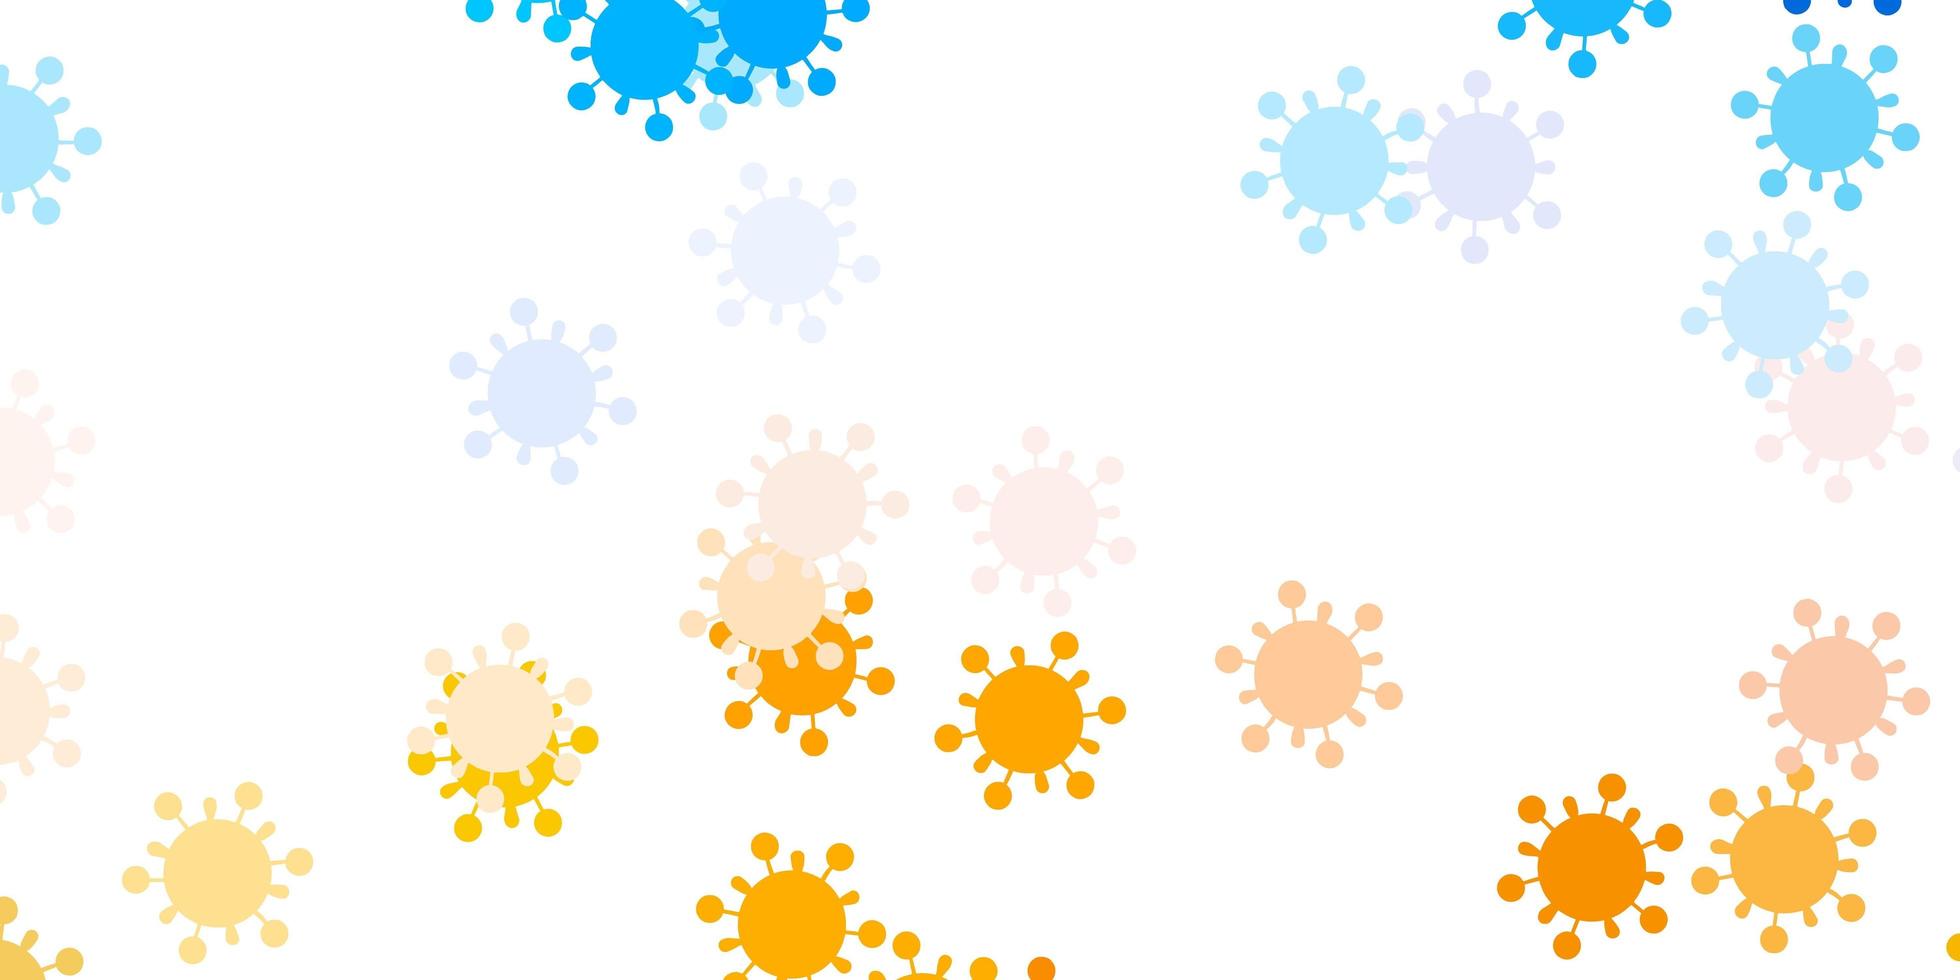 lichtblauw, geel vectorpatroon met coronaviruselementen. vector